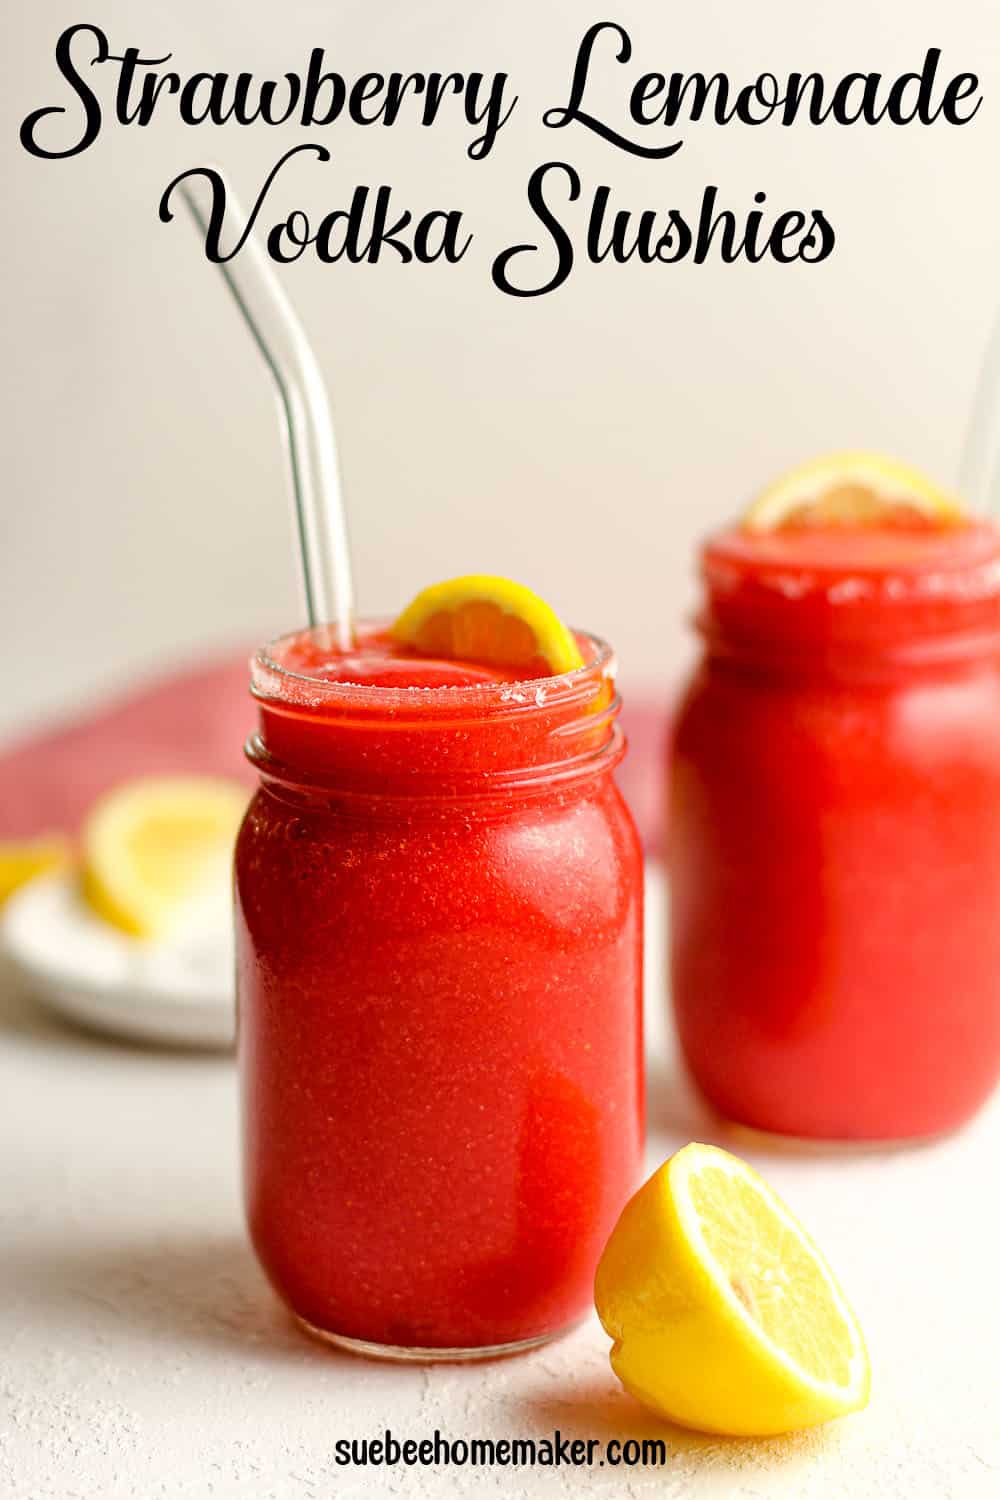 Two mason jars of strawberry lemonade vodka slushies, with lemon wedges